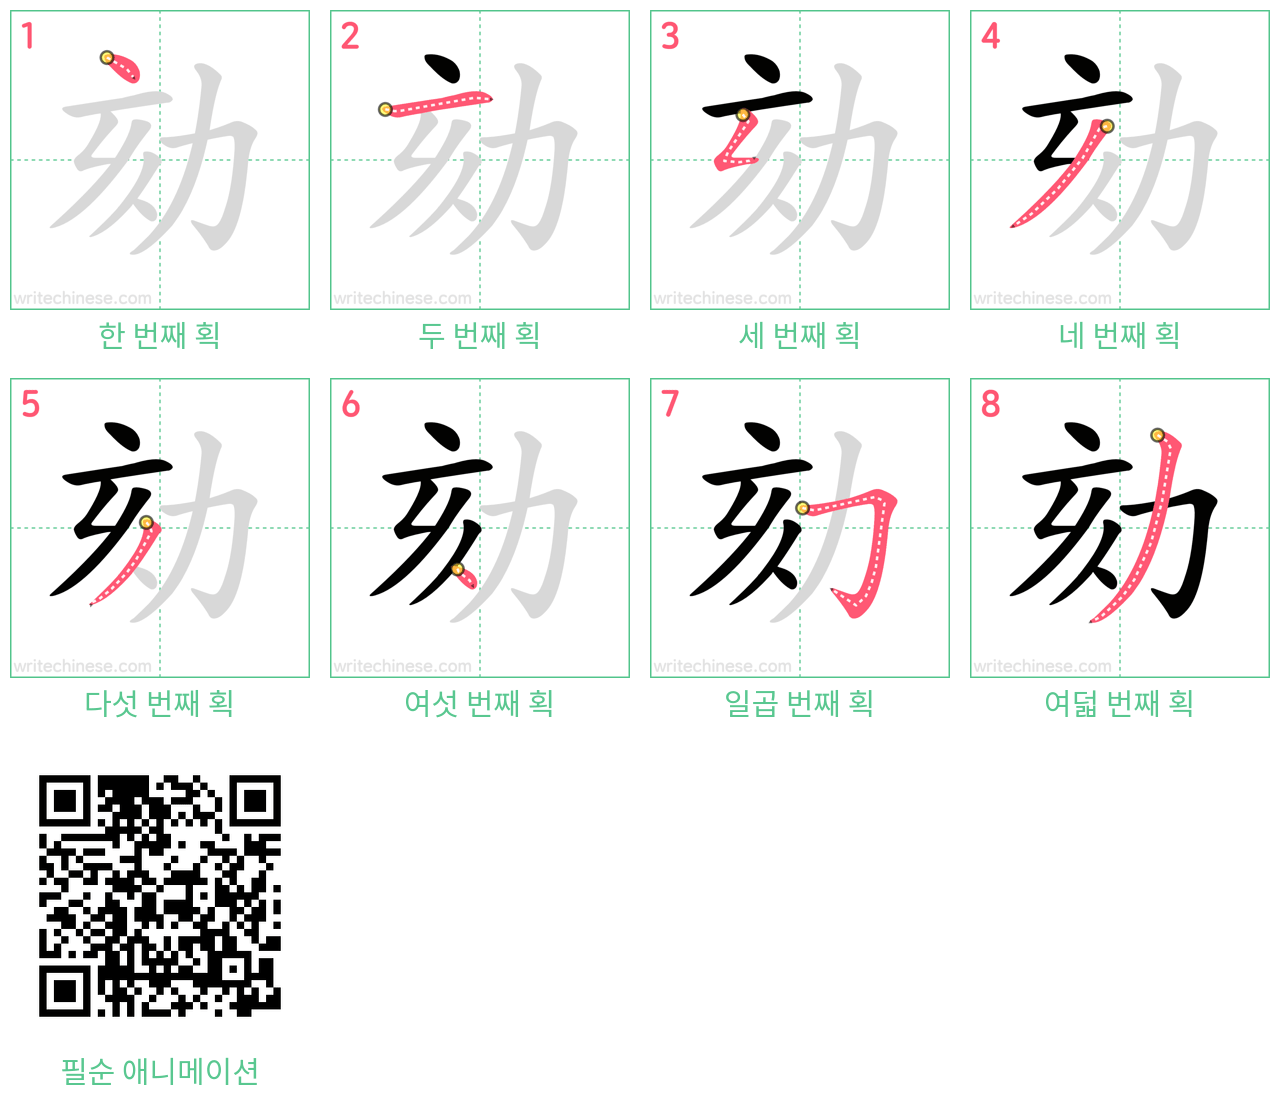 劾 step-by-step stroke order diagrams